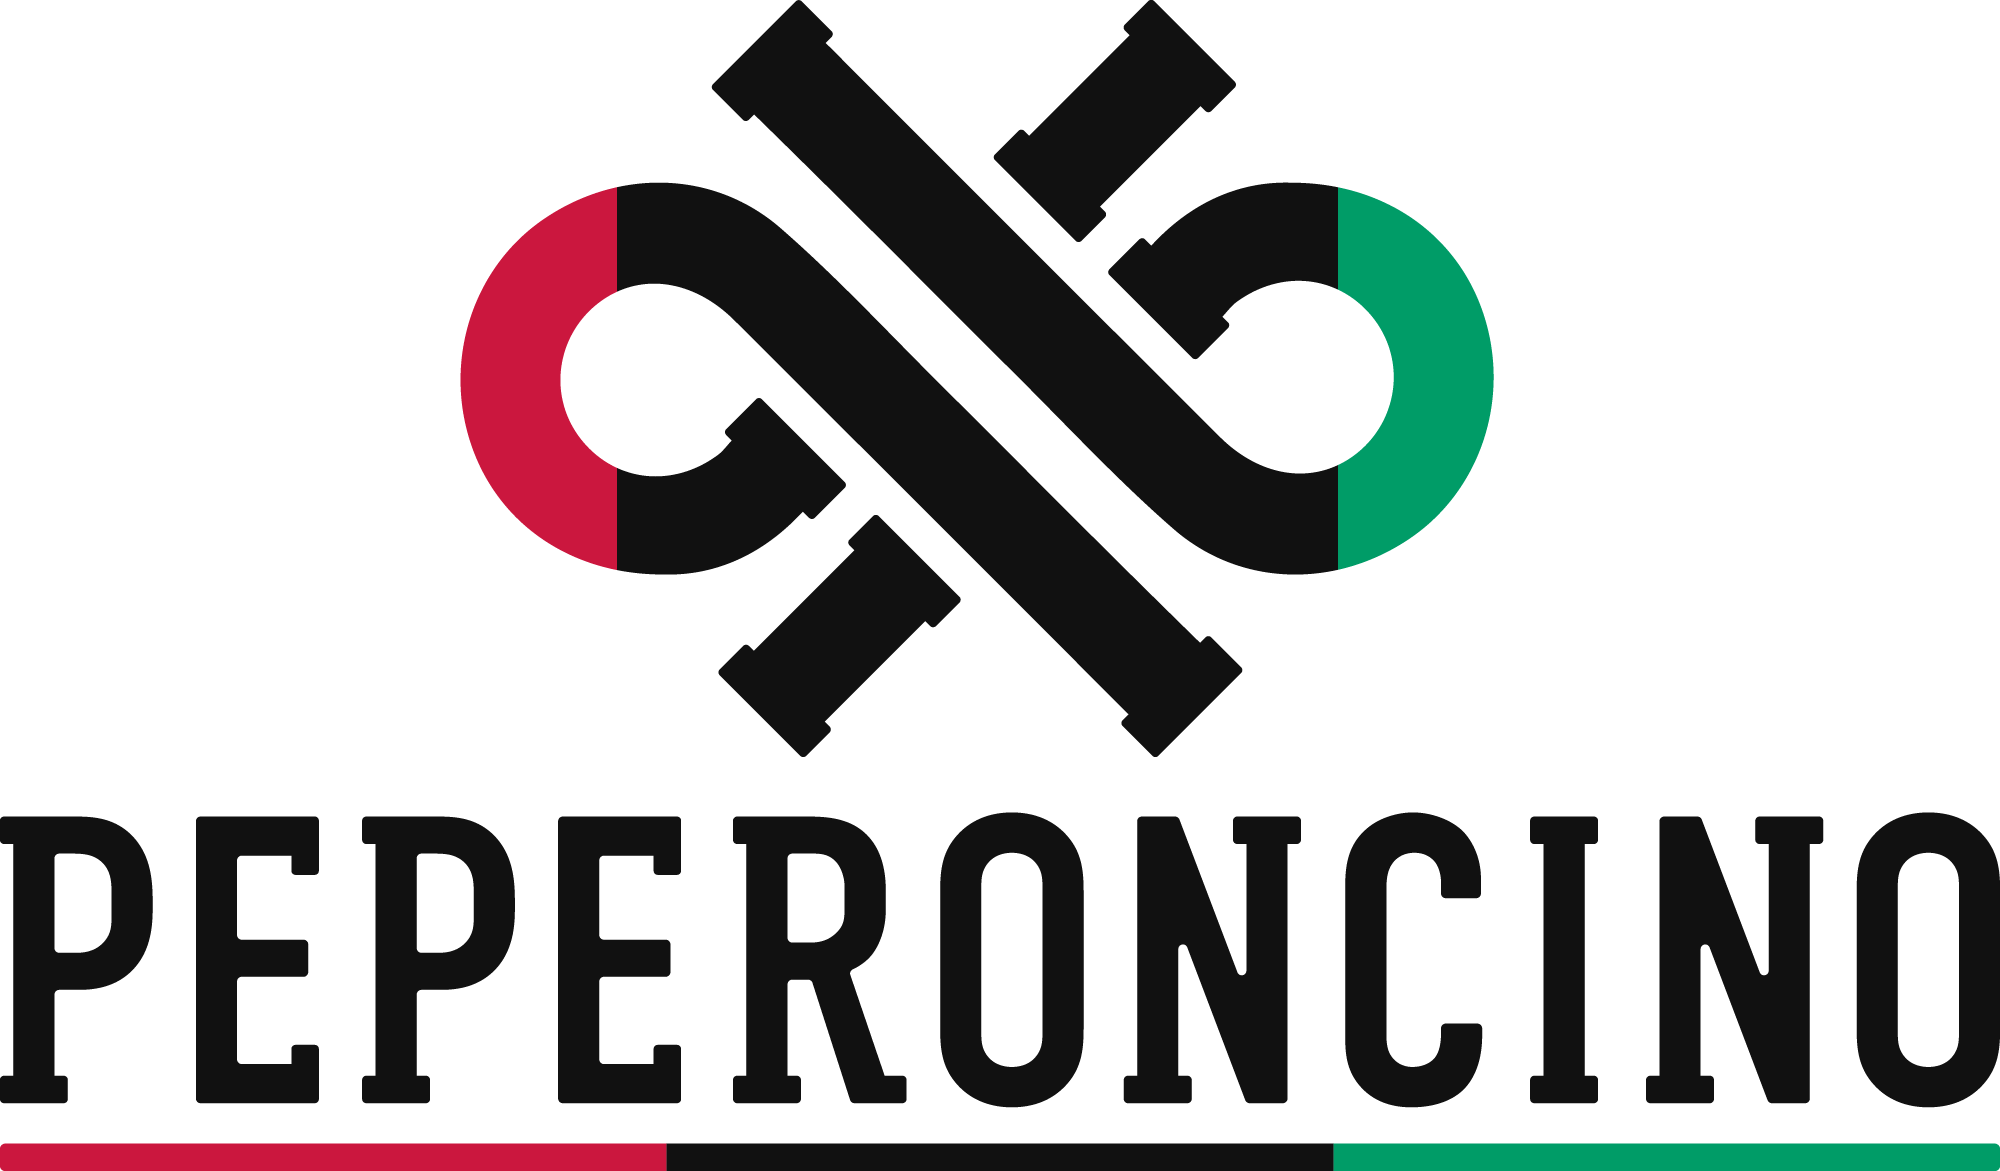 ペペロンチーノ ロゴ画像